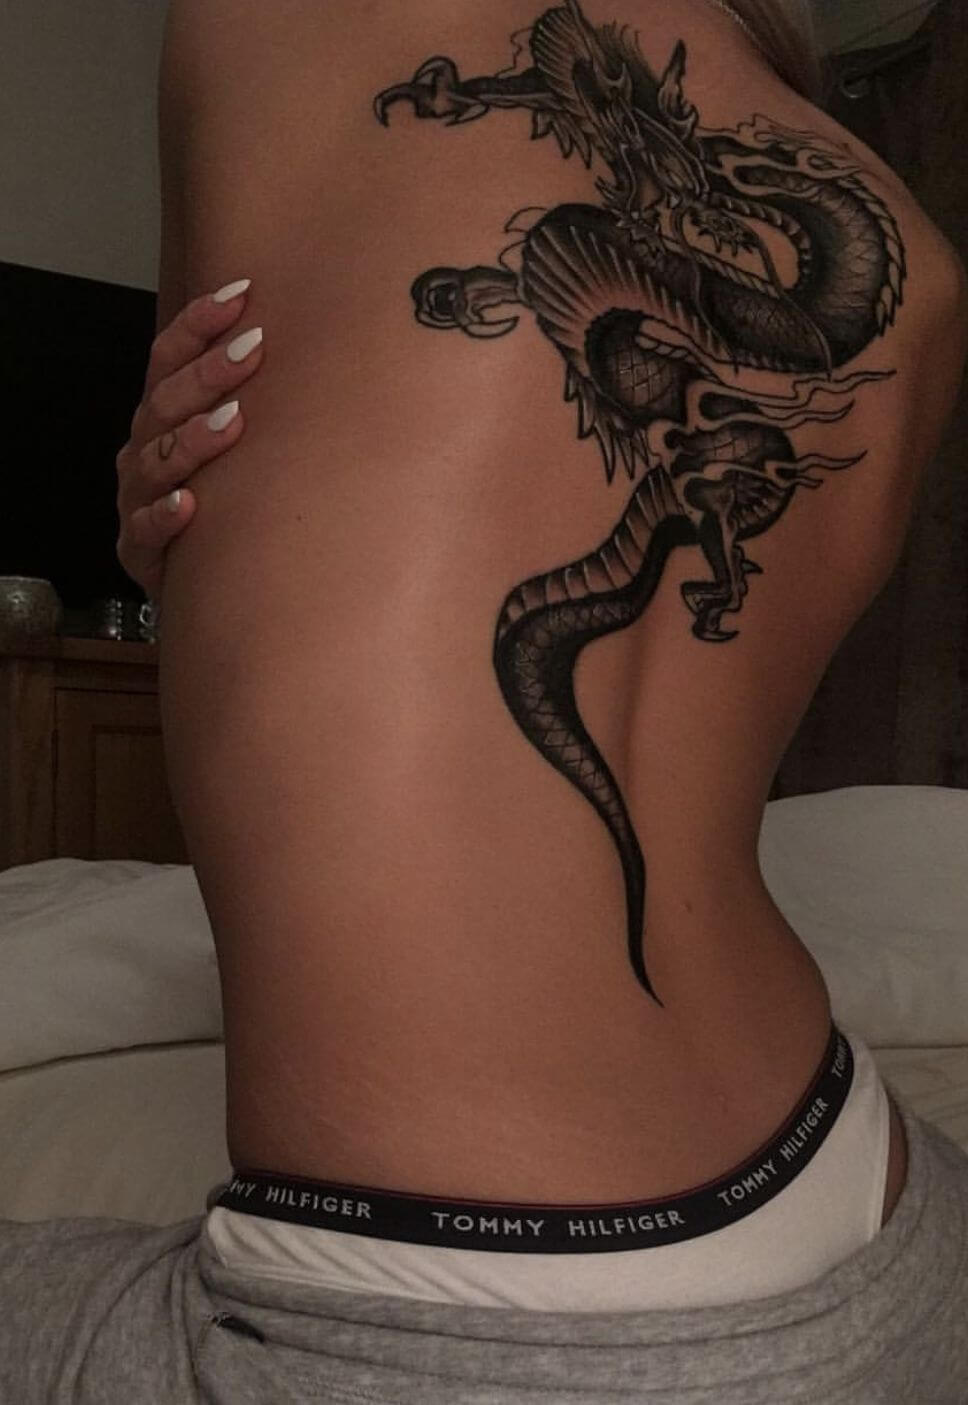 Back Tattoo